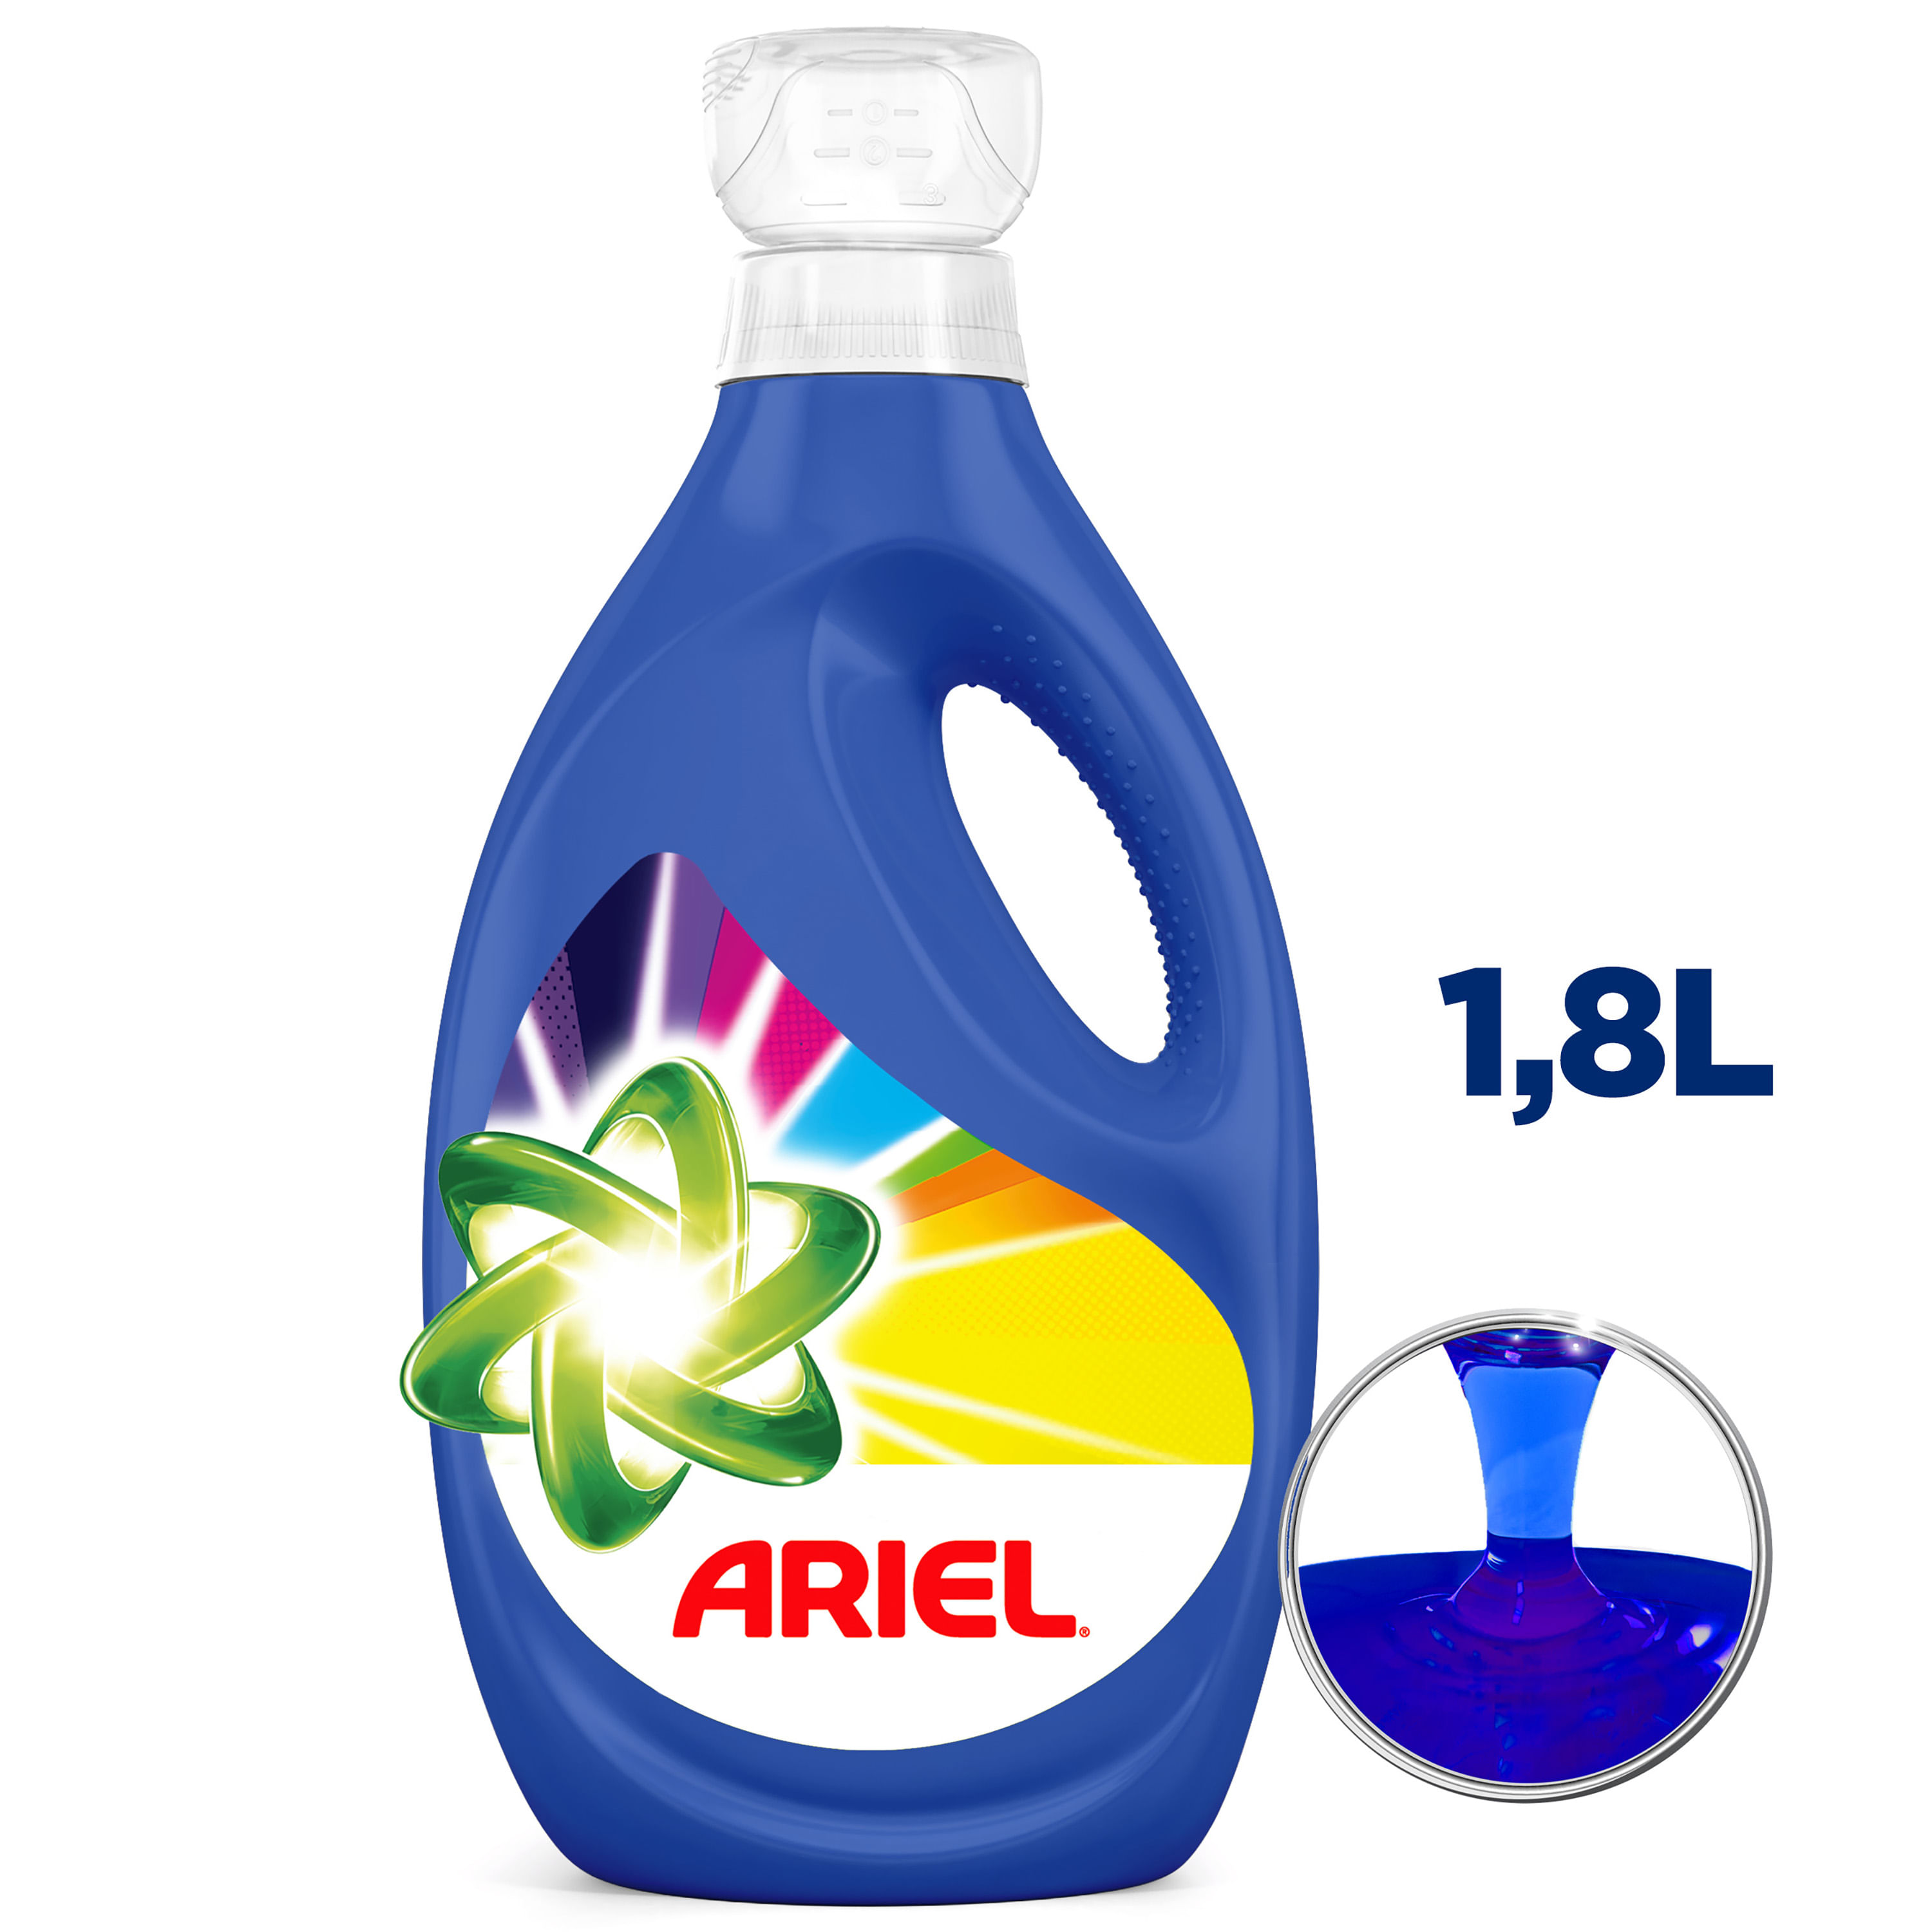 Detergente líquido Ariel revitacolor 5 l